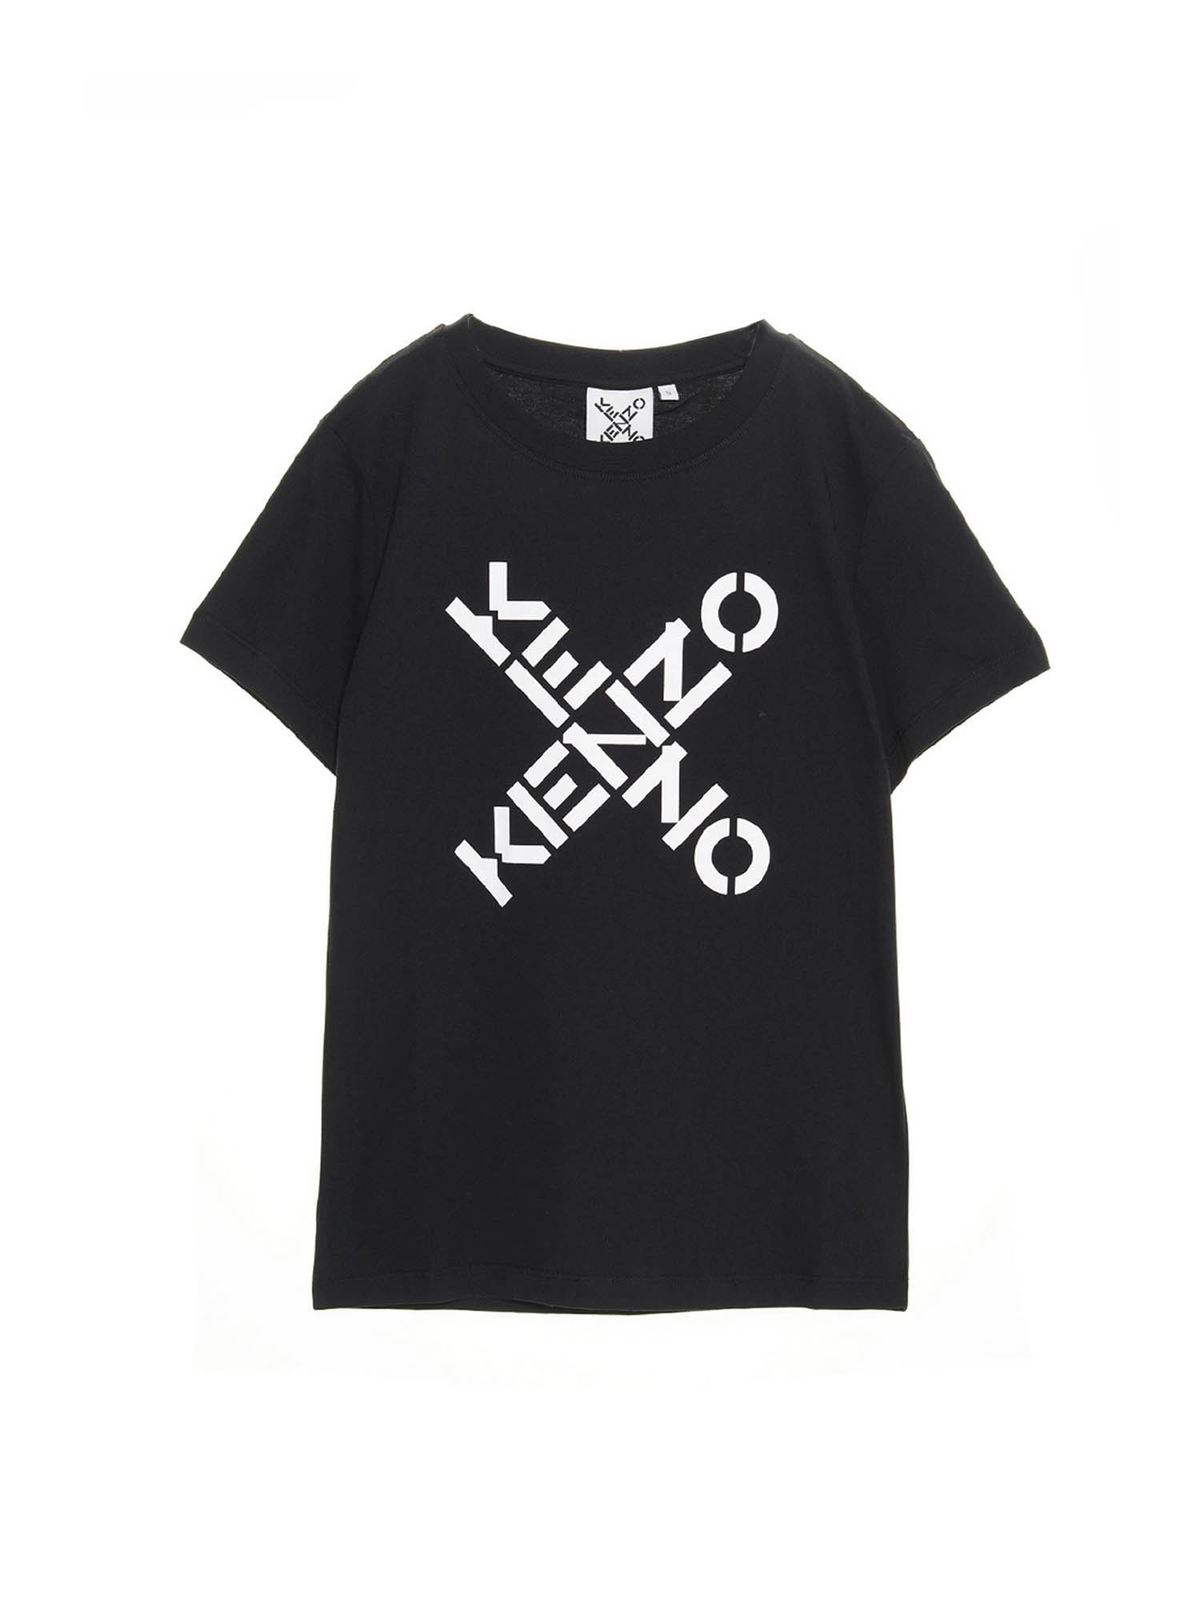 Westers land arm T-shirts Kenzo - Sport Big X T-shirt in black - FB52TS8504SJ99 | iKRIX.com